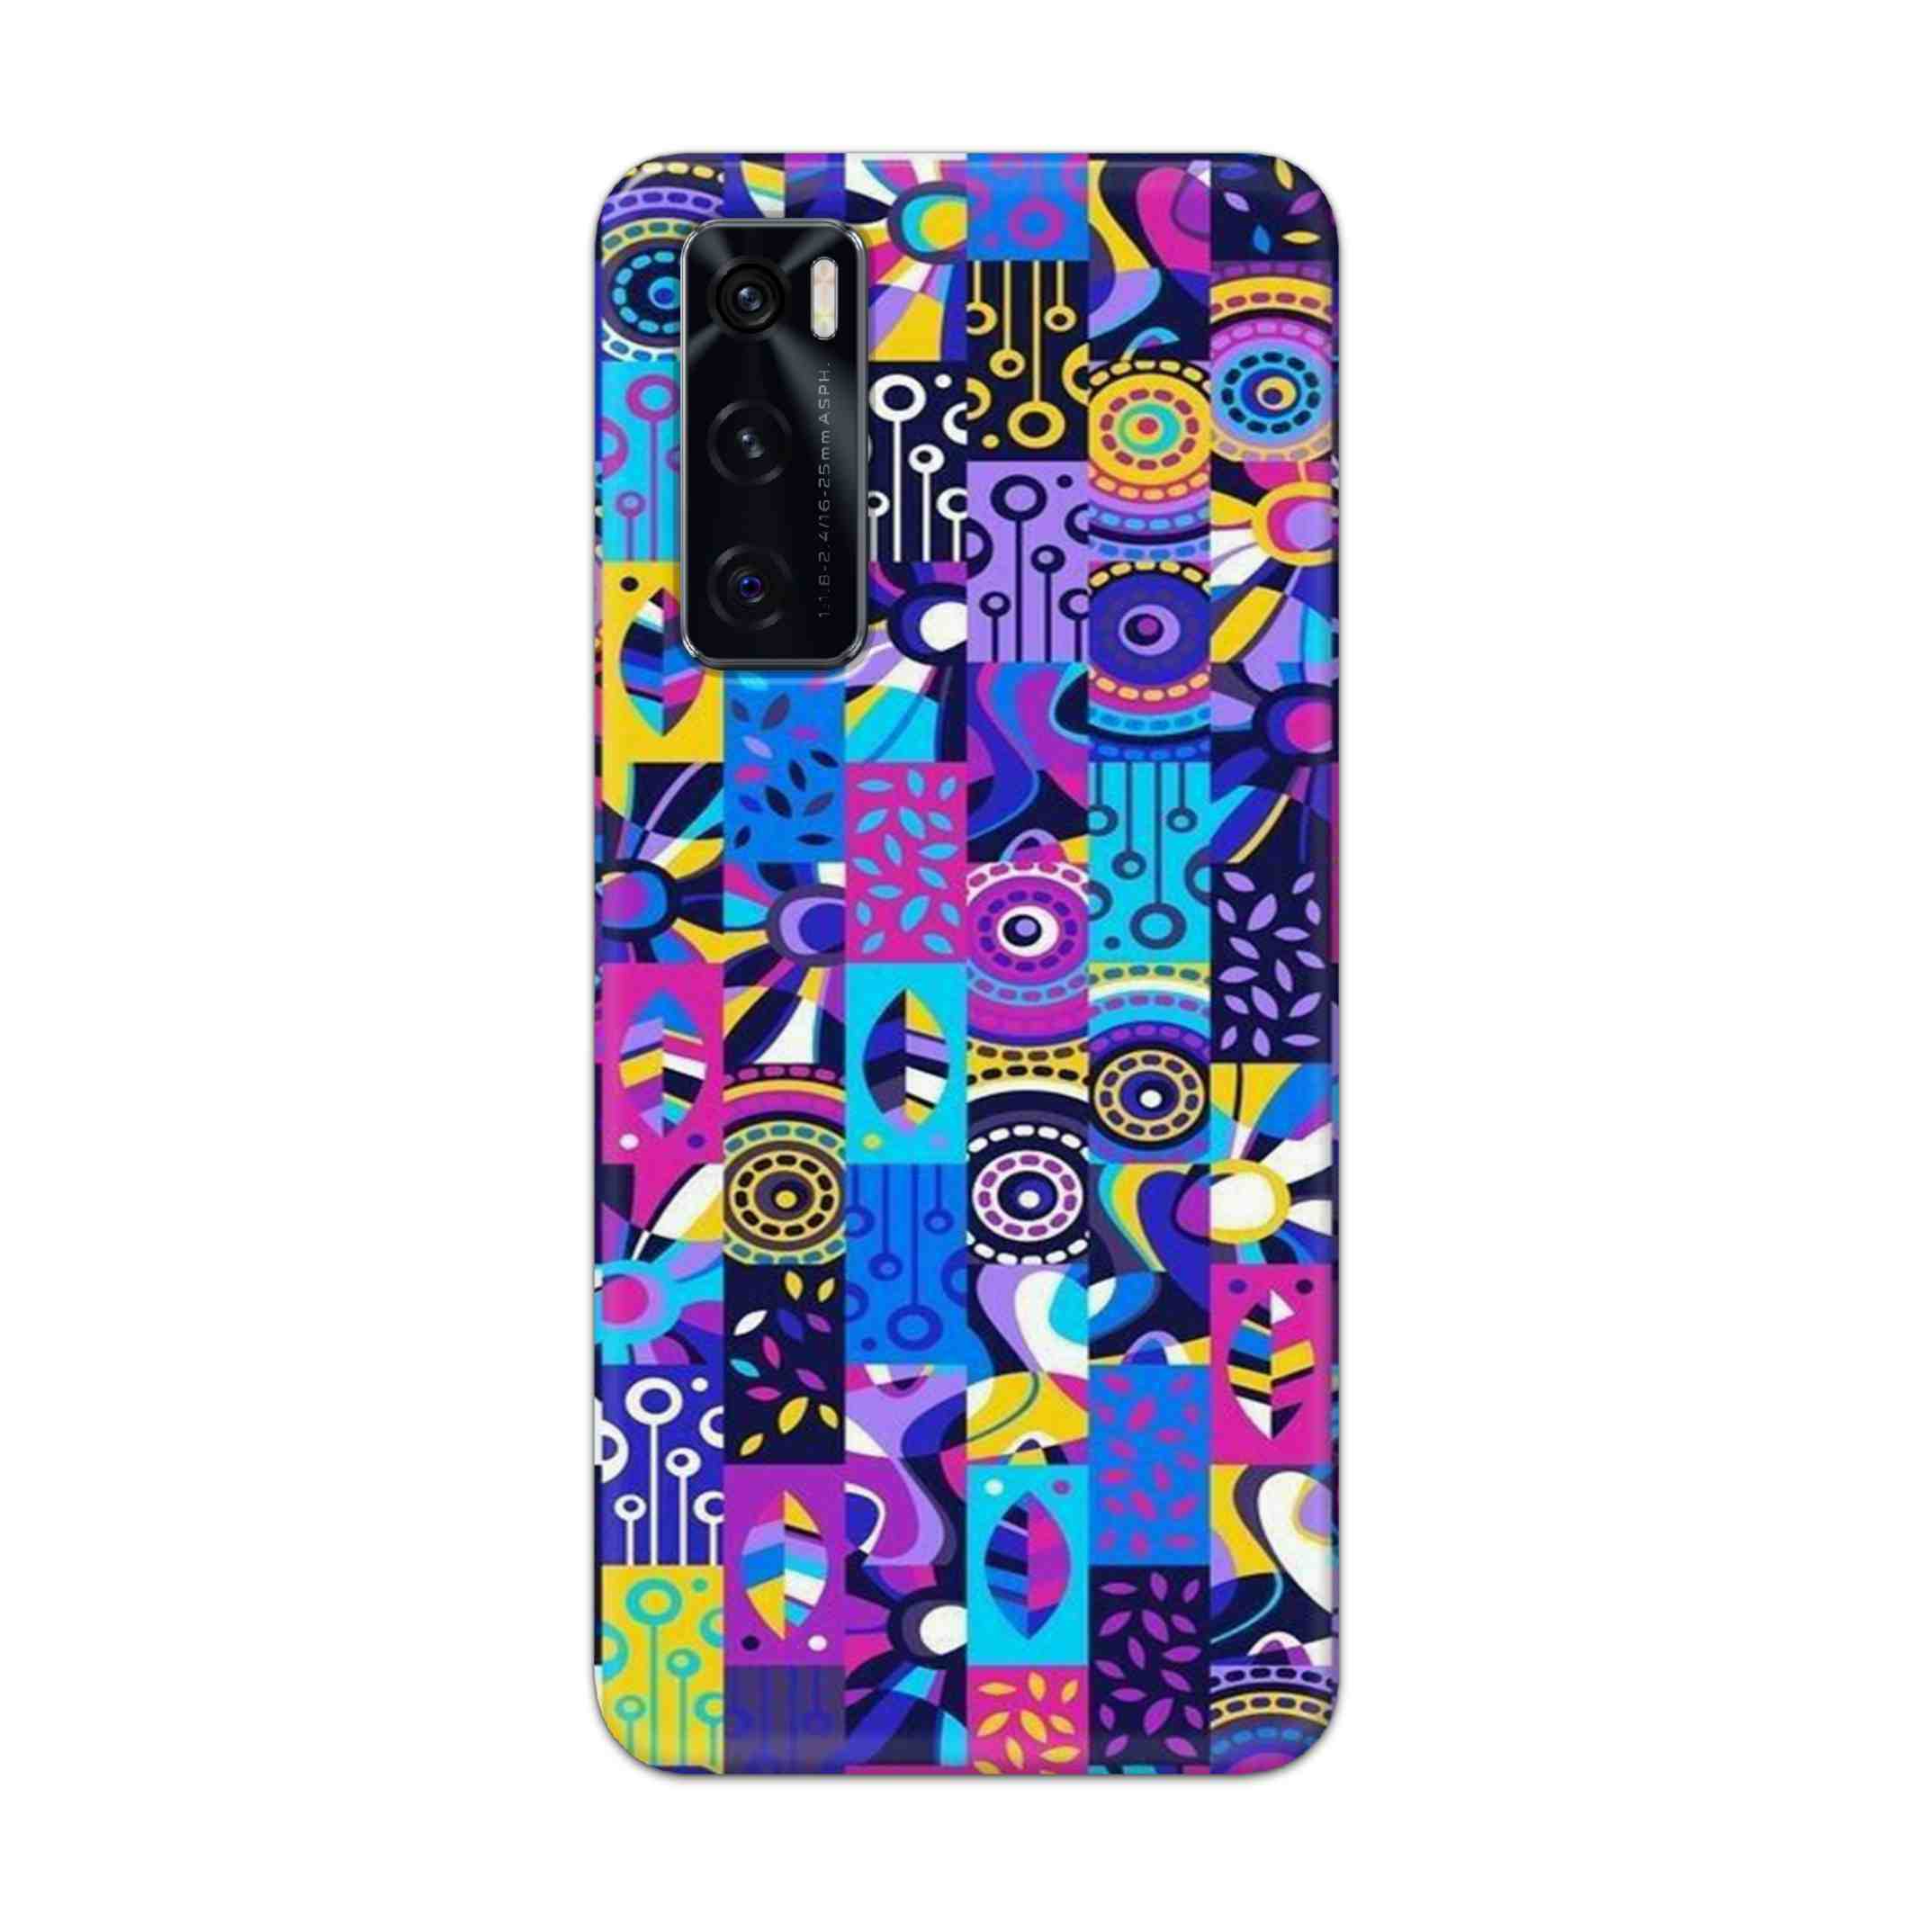 Buy Rainbow Art Hard Back Mobile Phone Case Cover For Vivo V20 SE Online